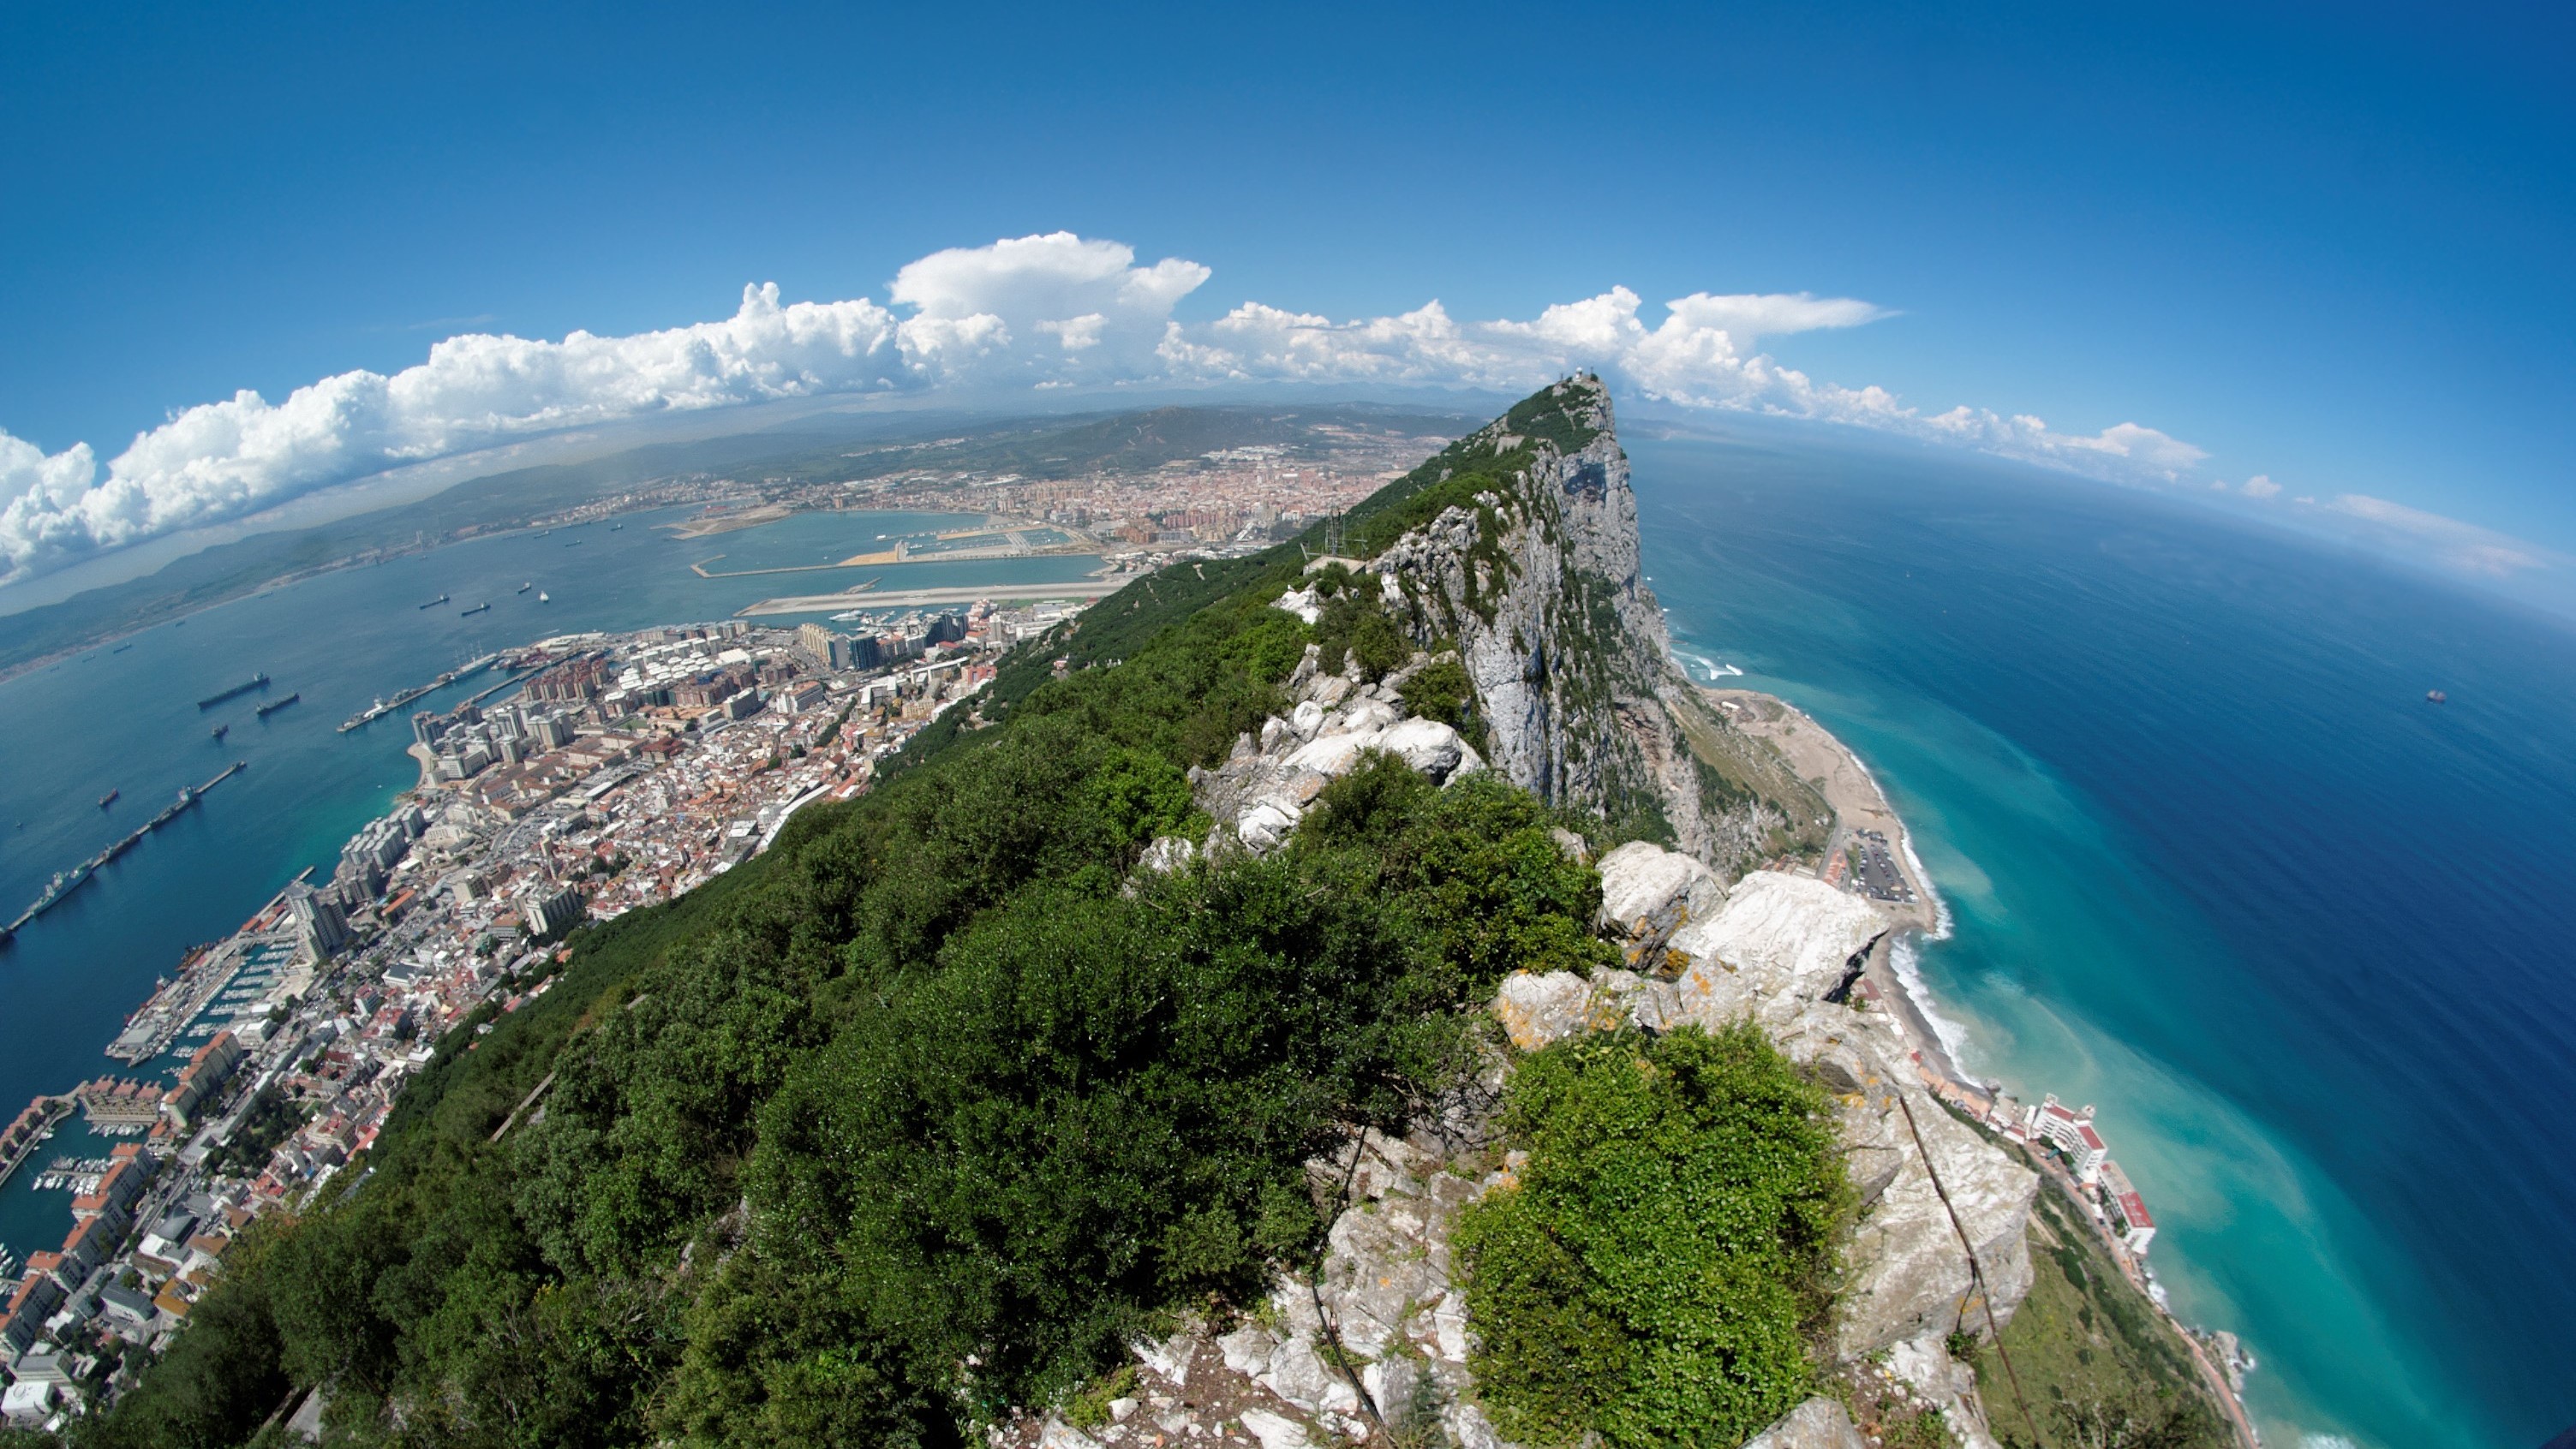 Die Spitze des Felsens von Gibraltar, gesehen durch ein Fisheye-Objektiv.